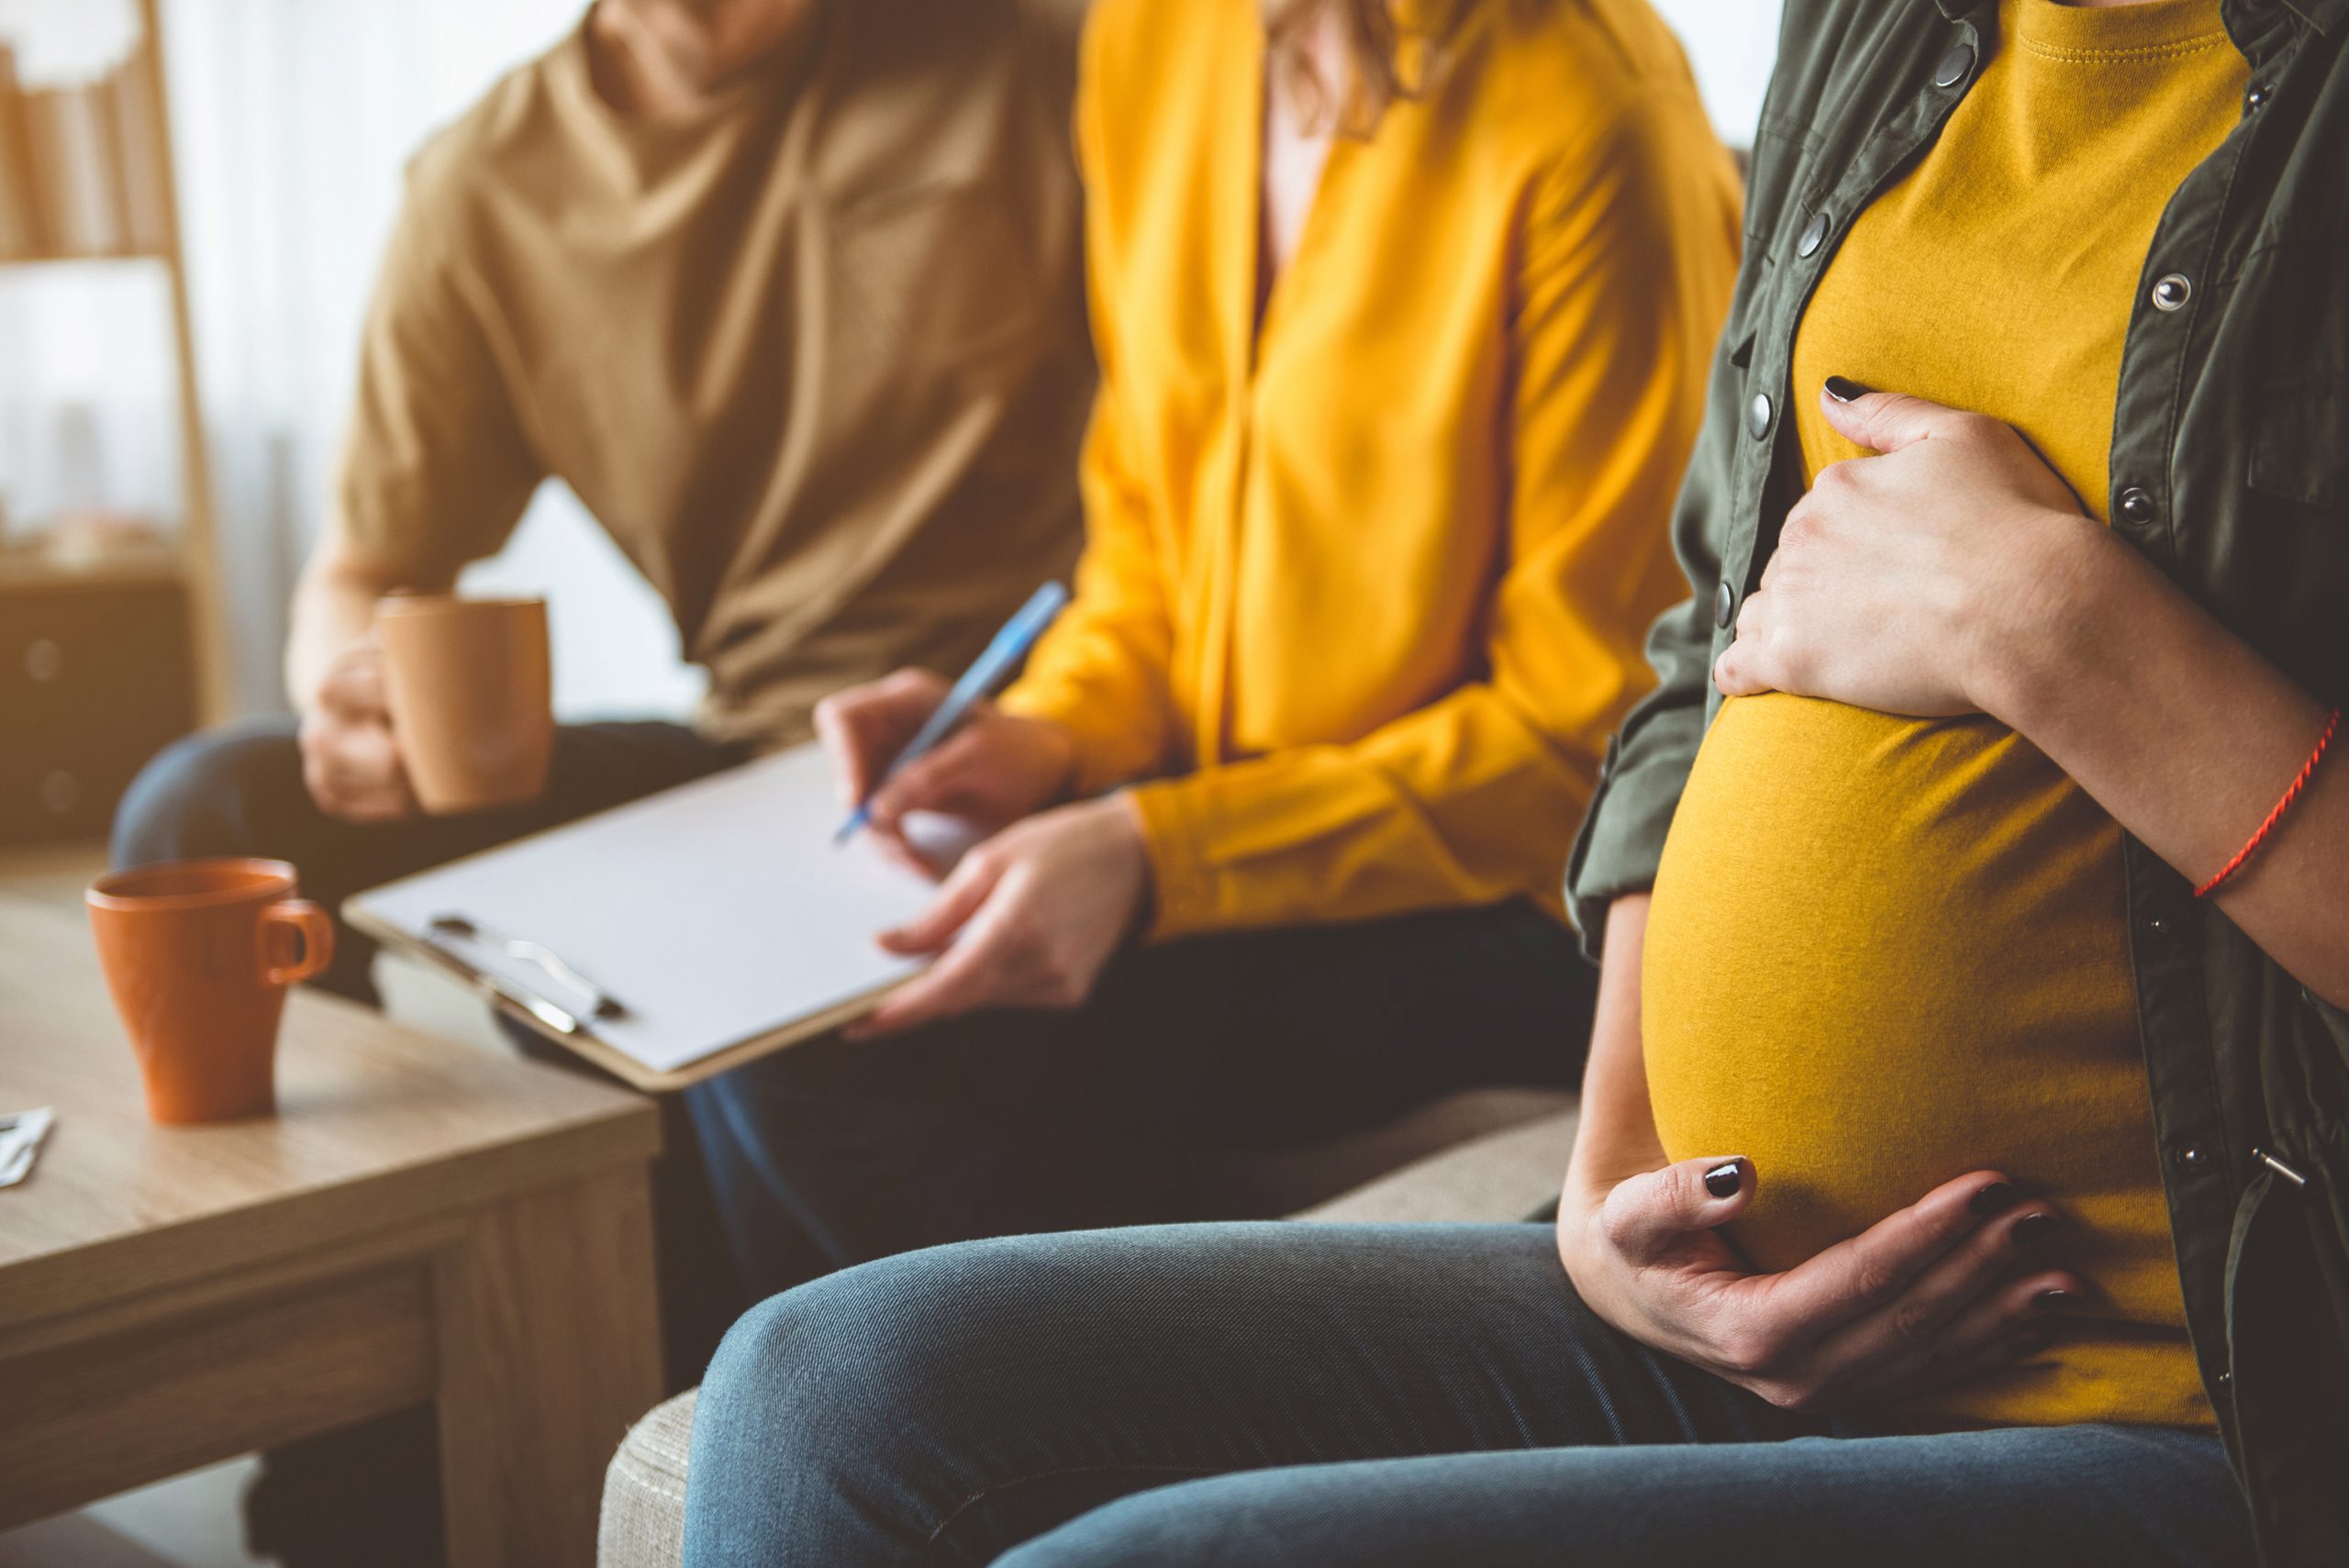 Суррогатное материнство: этические, юридические и психологические аспекты